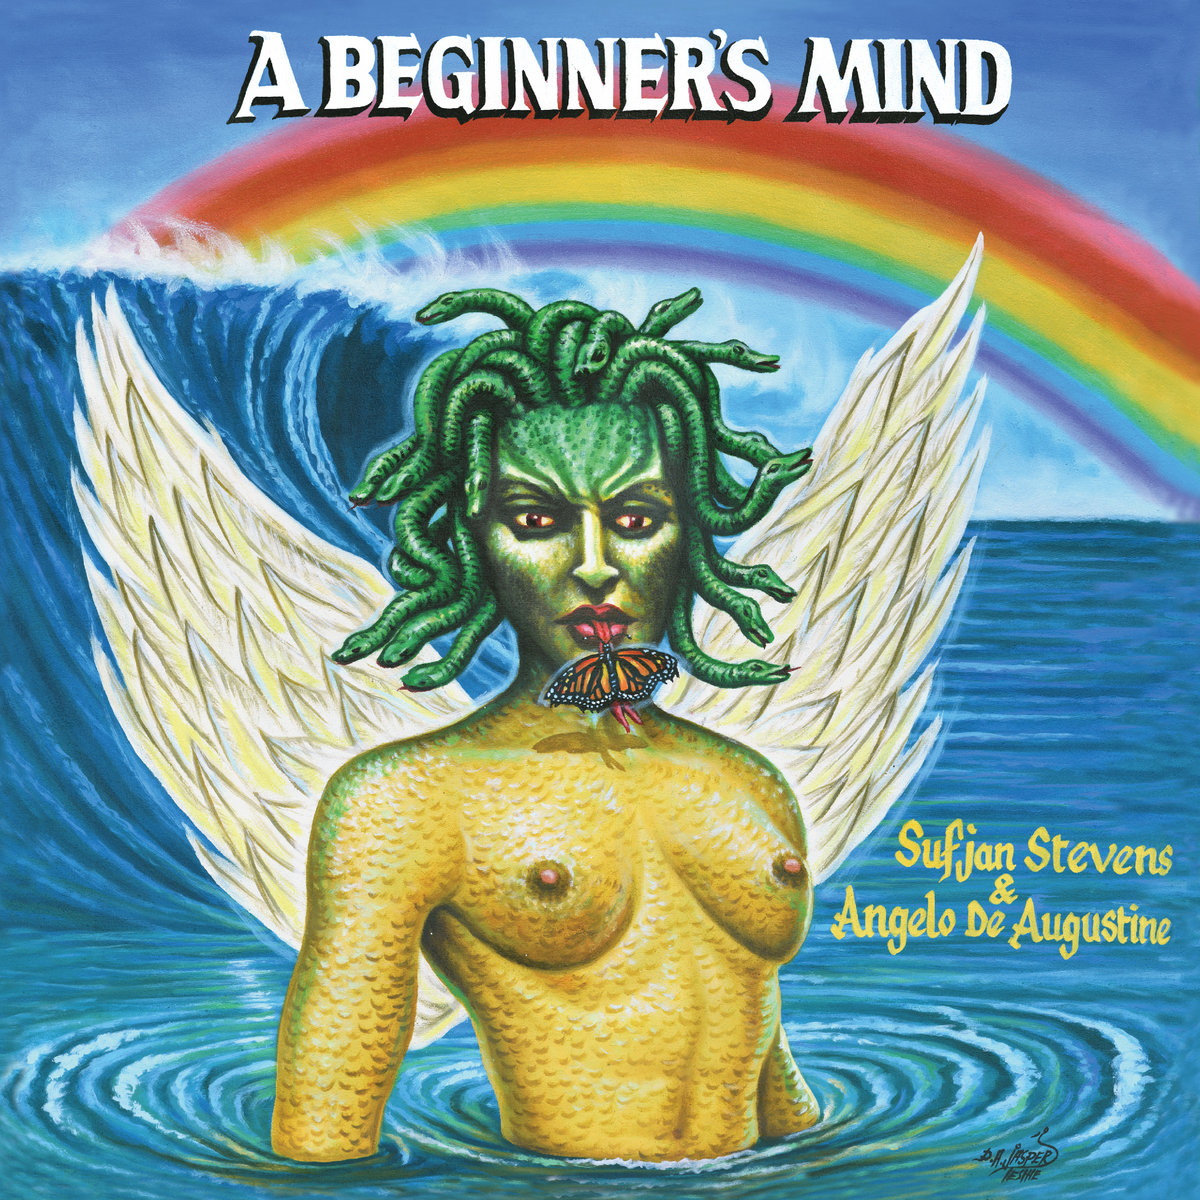 Sufjan Stevens and Angelo De Augustine – A Beginner's Mind album artwork